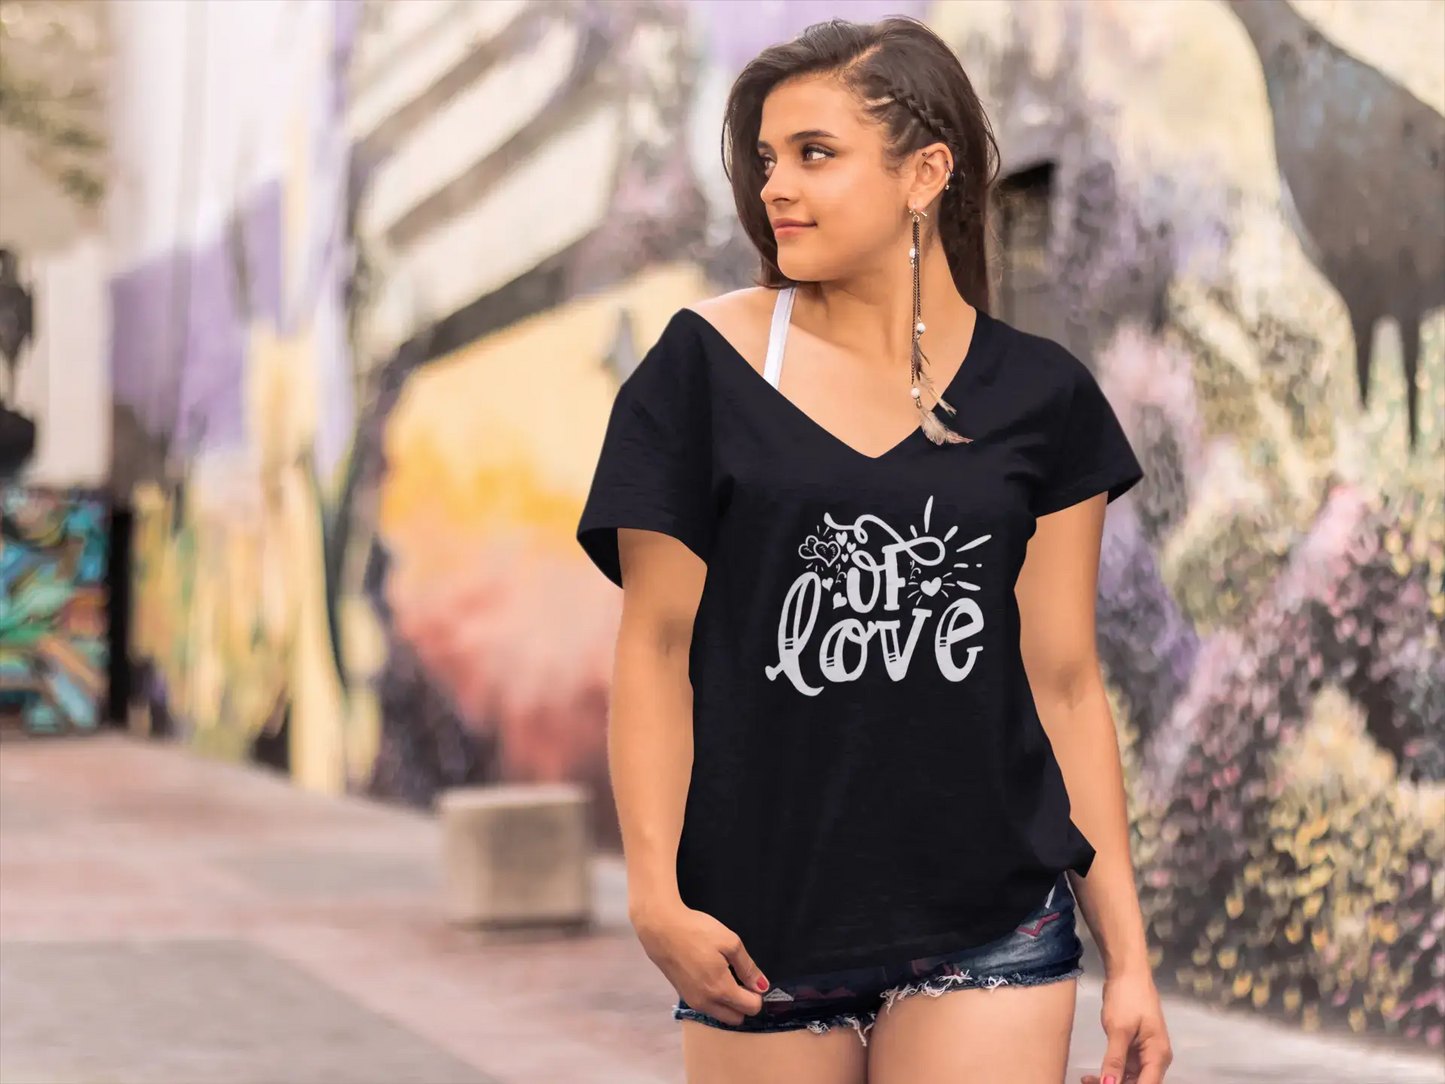 ULTRABASIC Women's T-Shirt Of Love - Short Sleeve Tee Shirt Tops